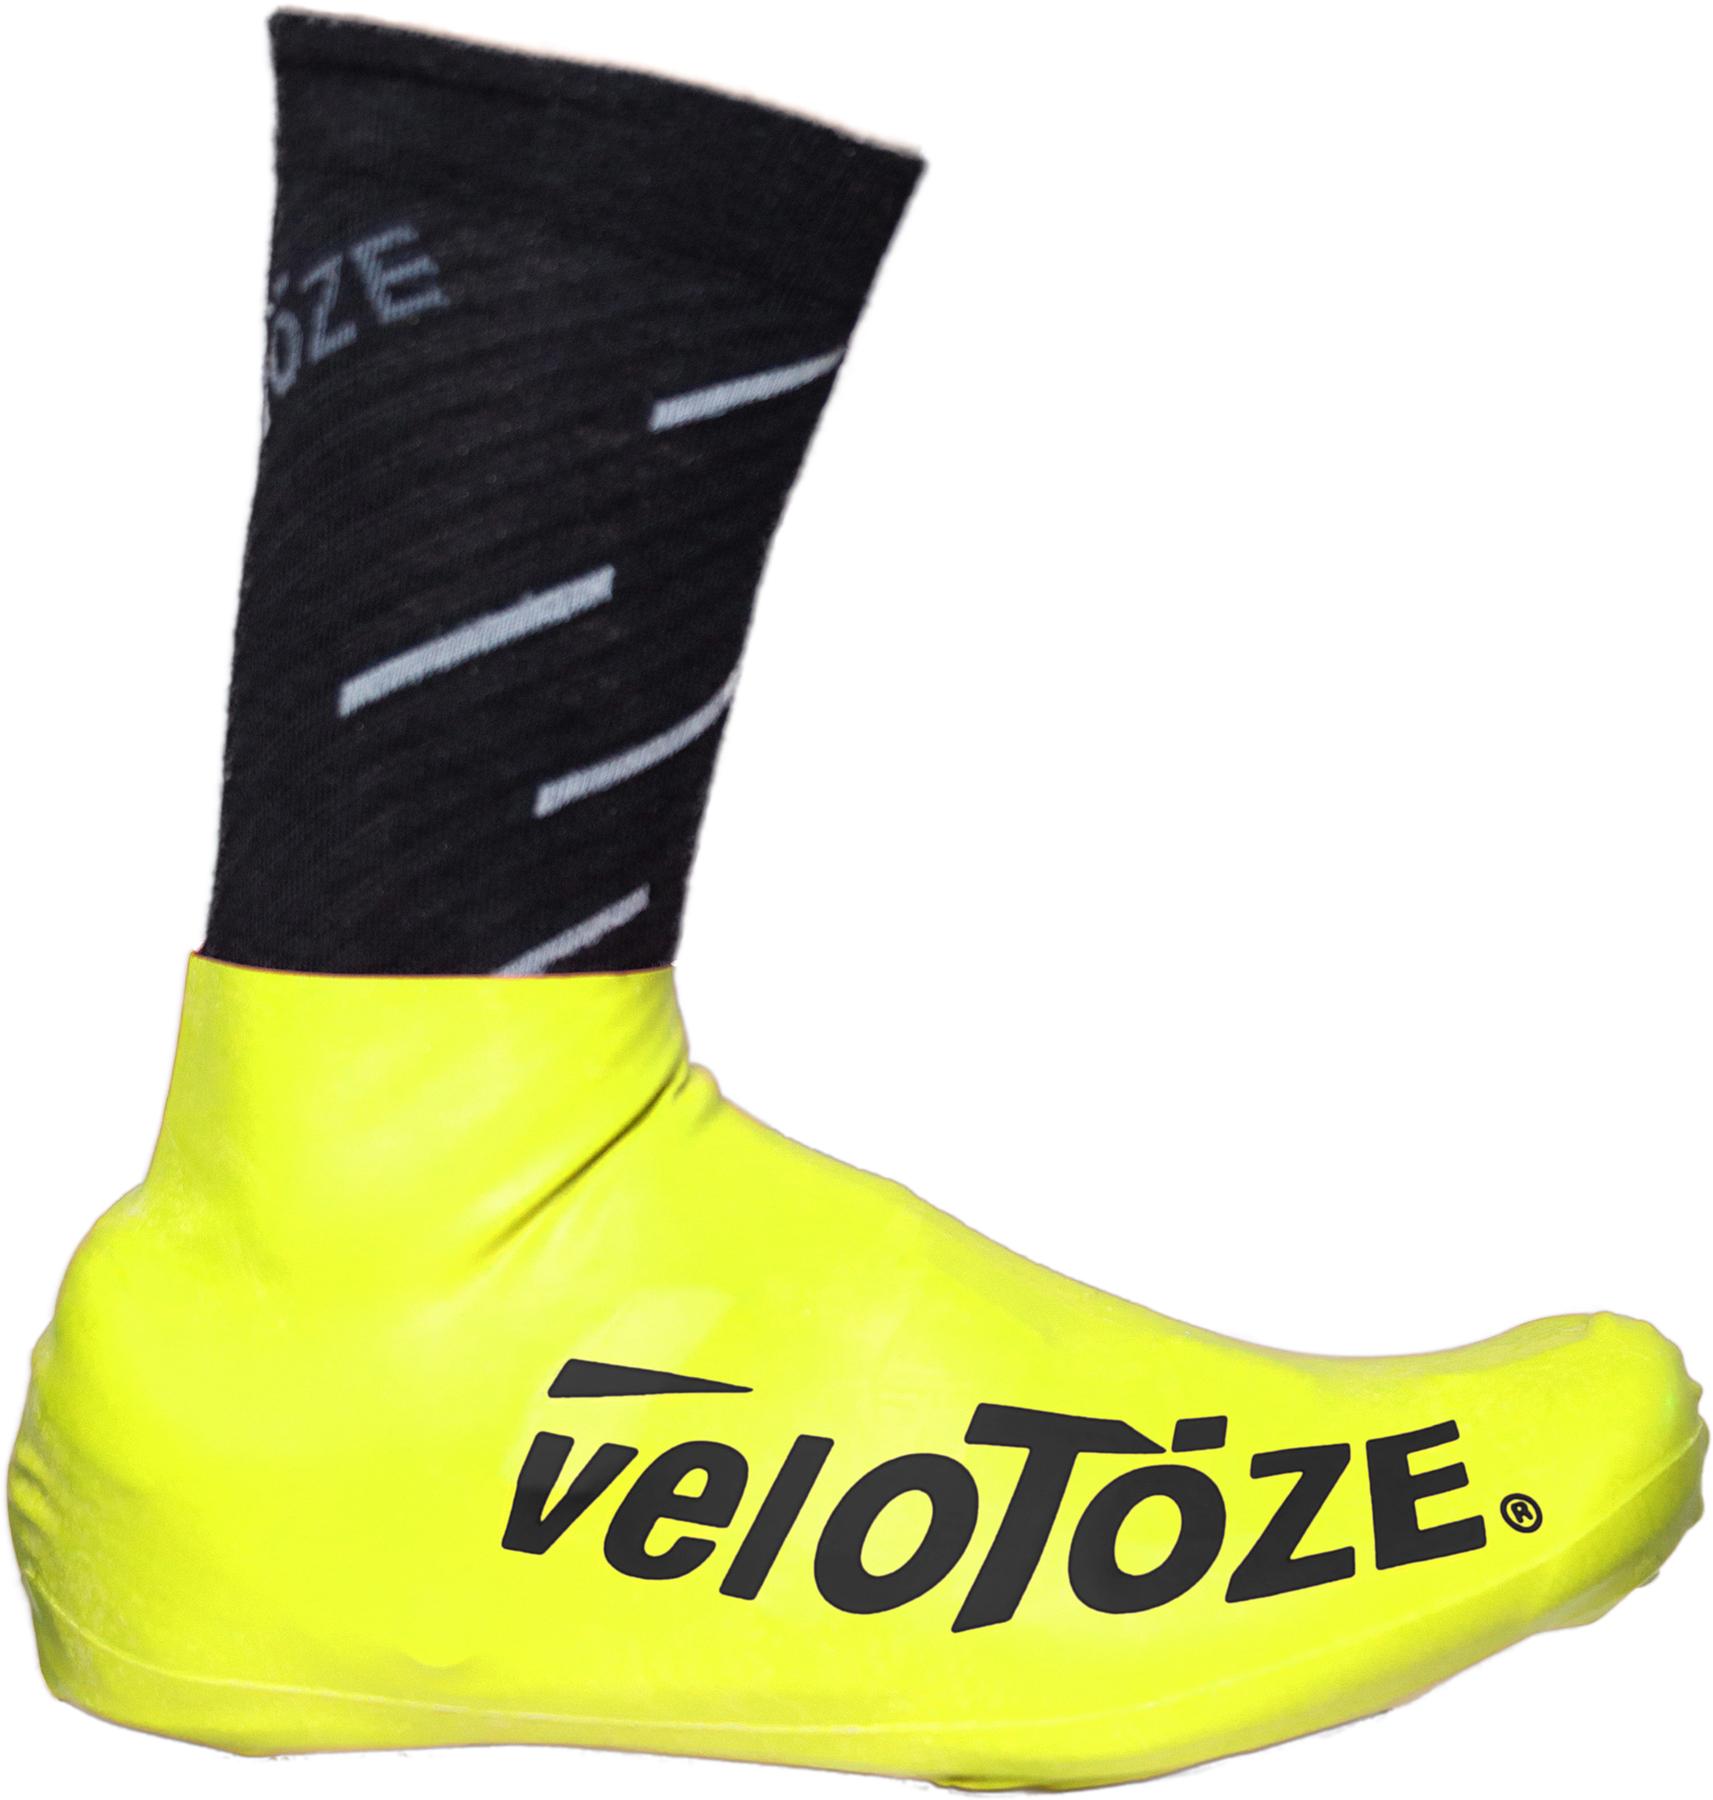 Velotoze Short Overshoes 2.0  Yellow